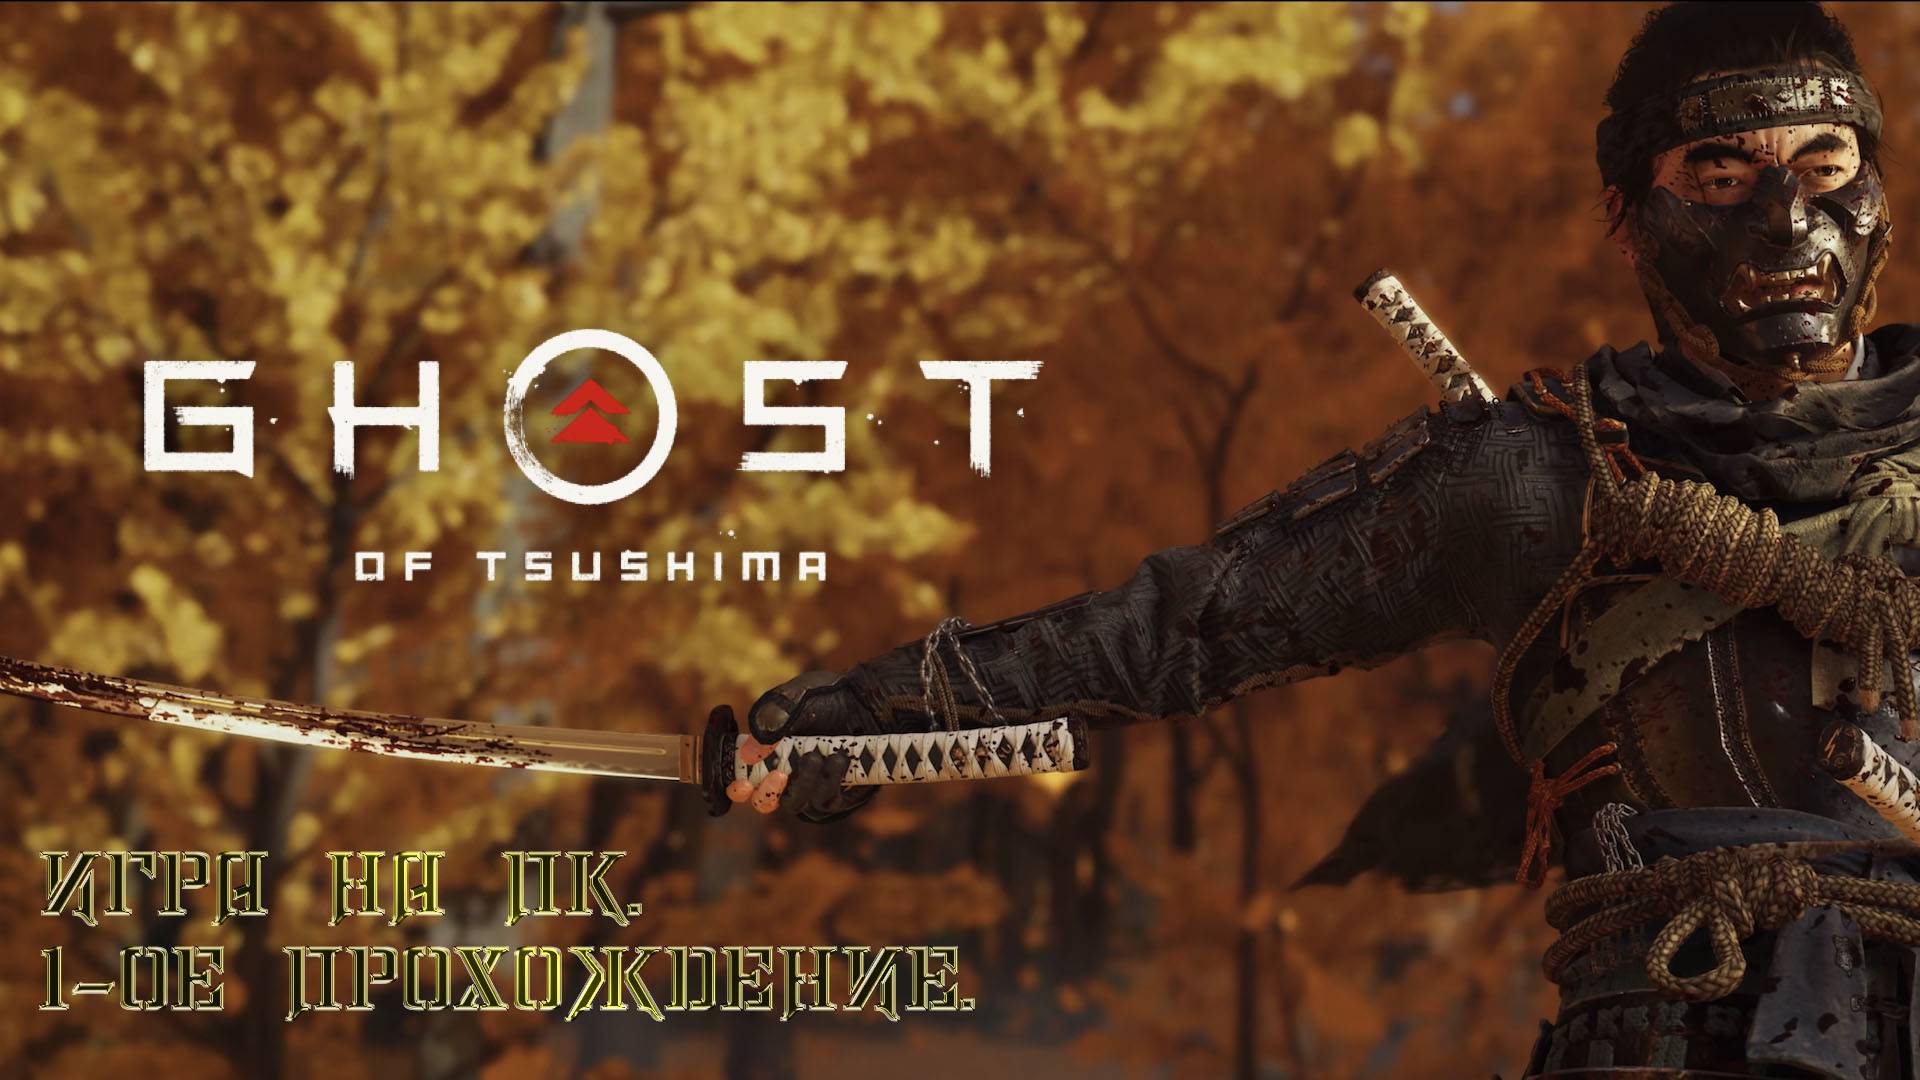 GHOST of TSUSHIMA - Игра на ПК. 1-ое прохождение.